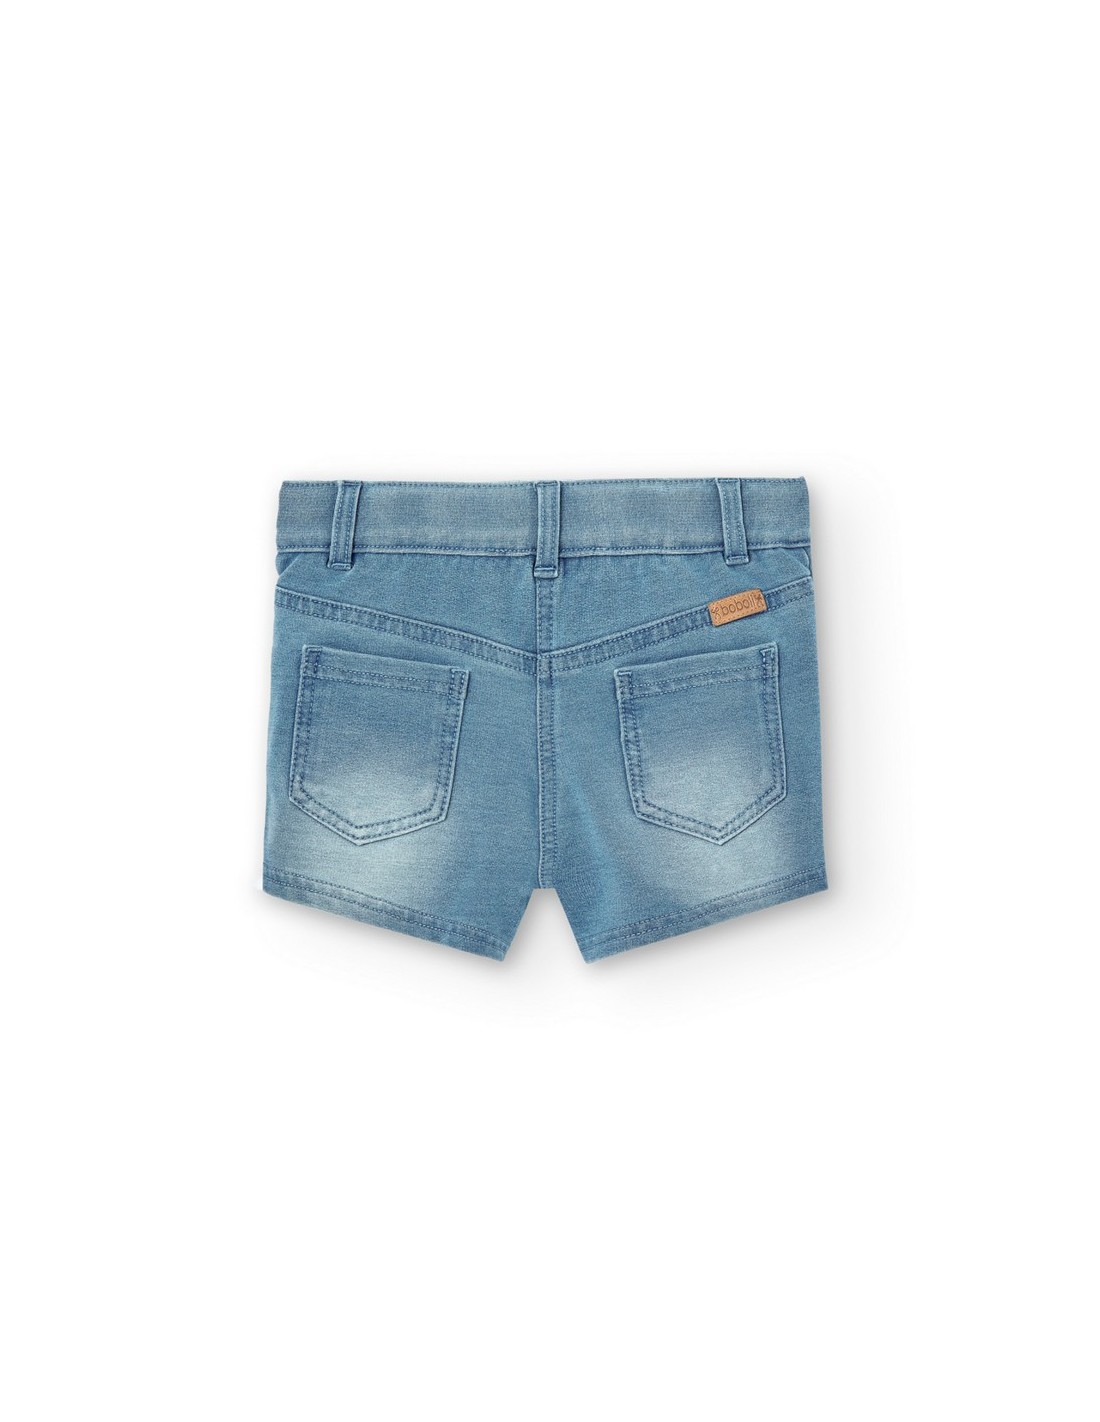 shorts-niña-boboli-490081 (1)